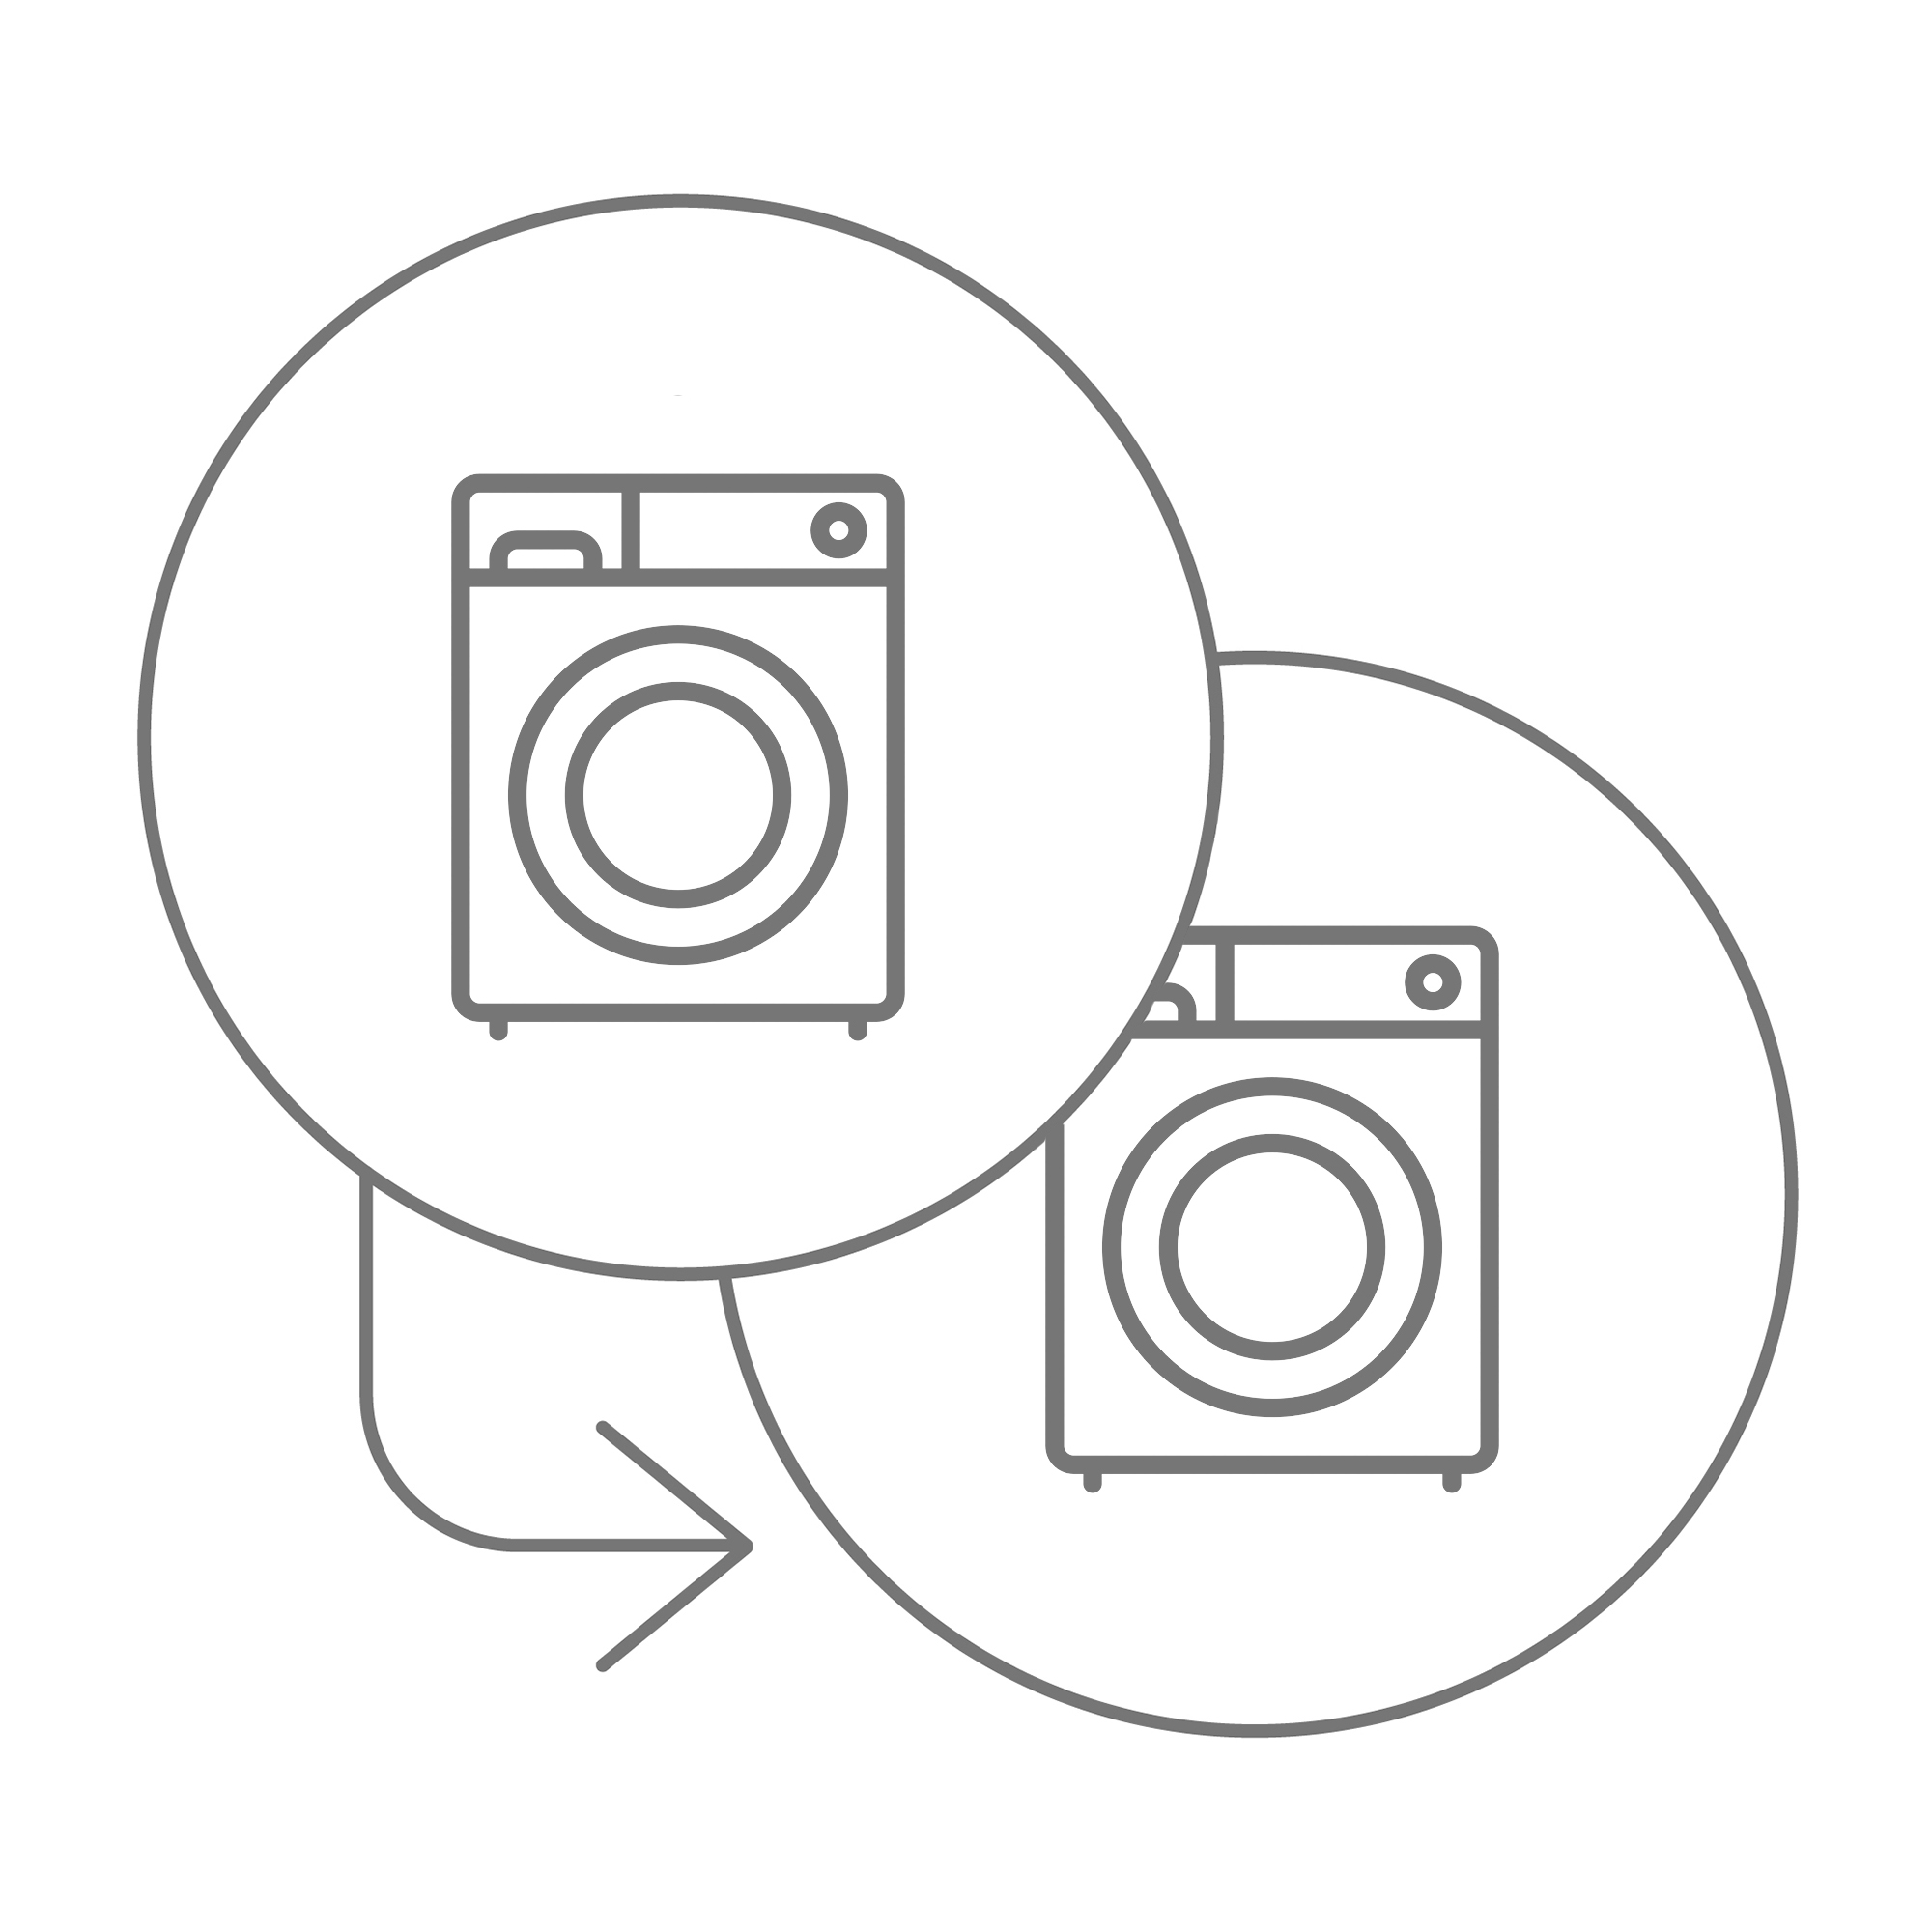  Заміна пральної машини в інтернет-магазині, головне фото